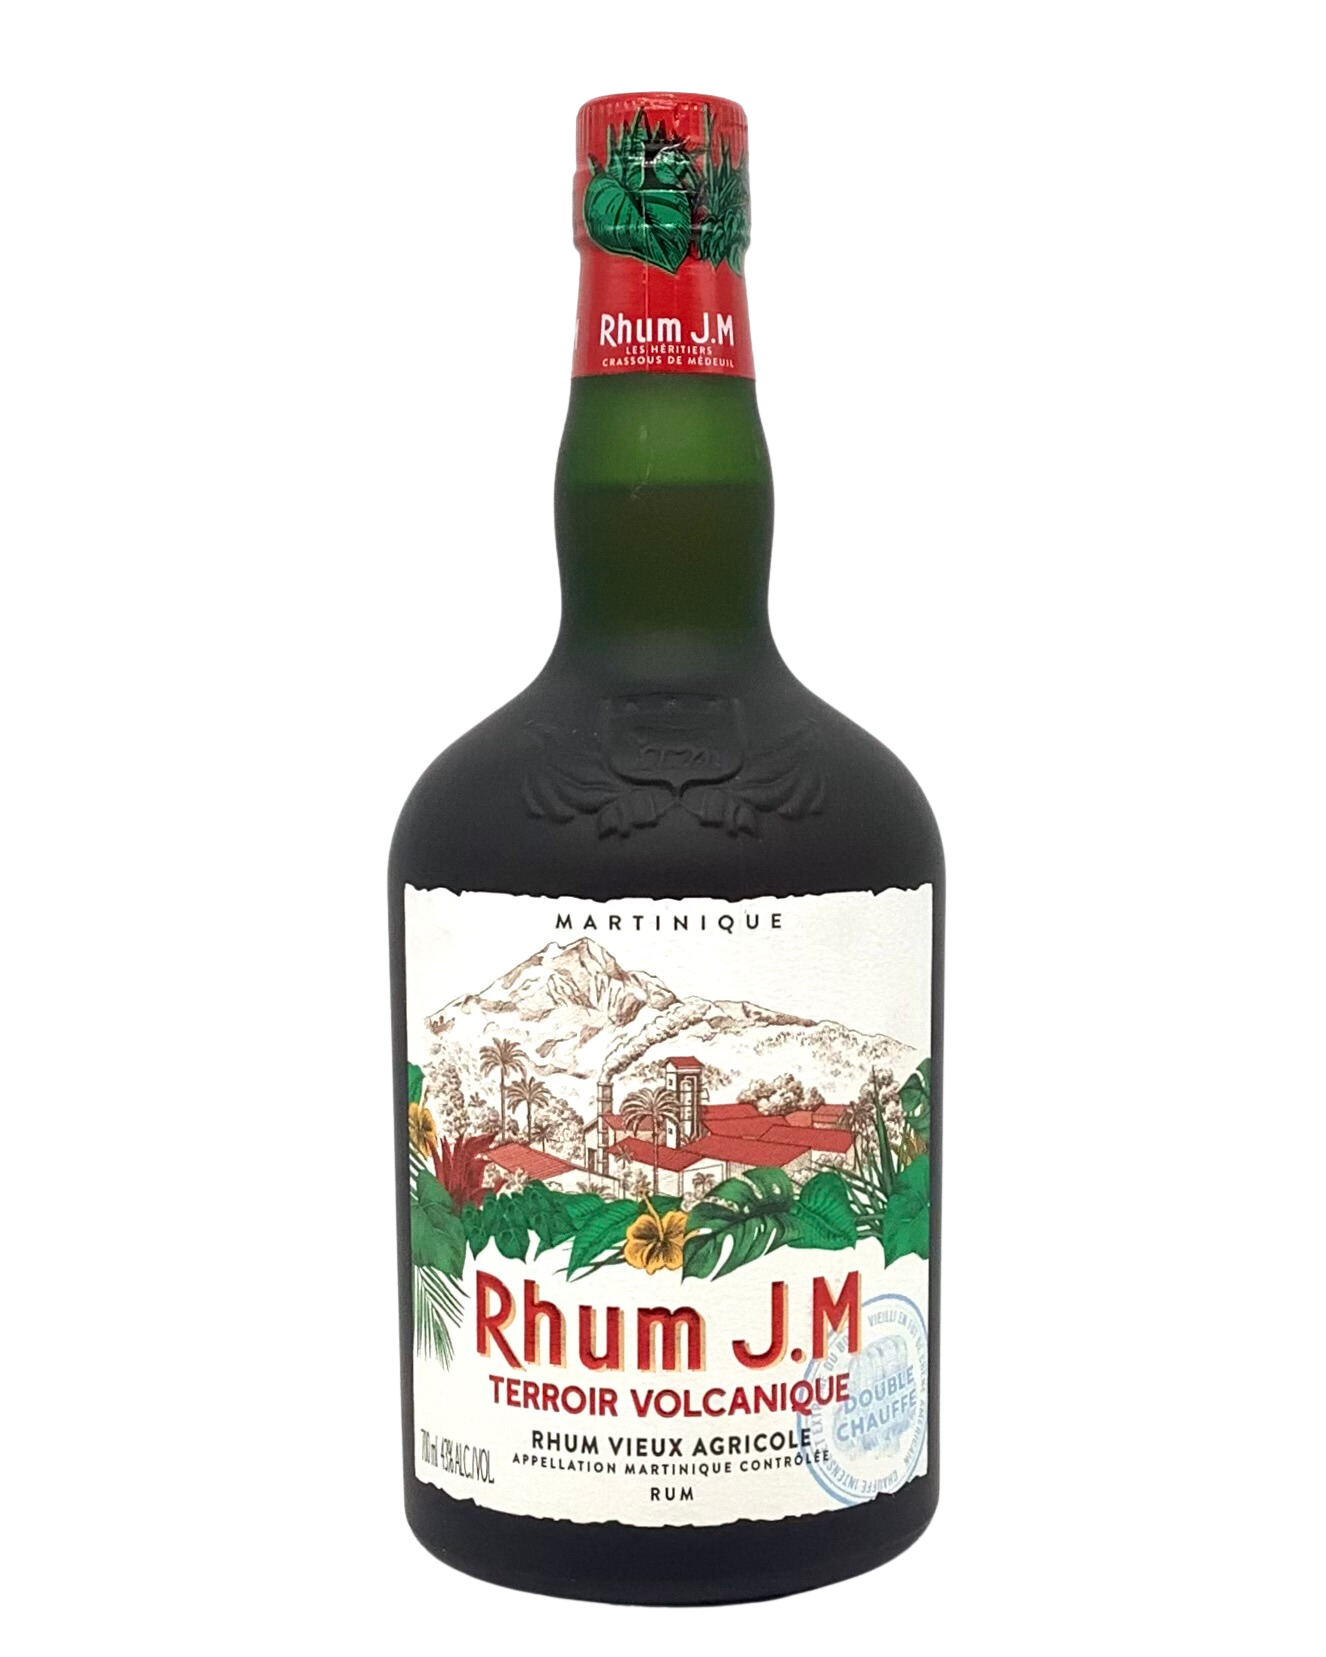 Rhum J.M., Rhum Vieux Agricole Terroir Volcanique Martinique, French West  Indies 700ml